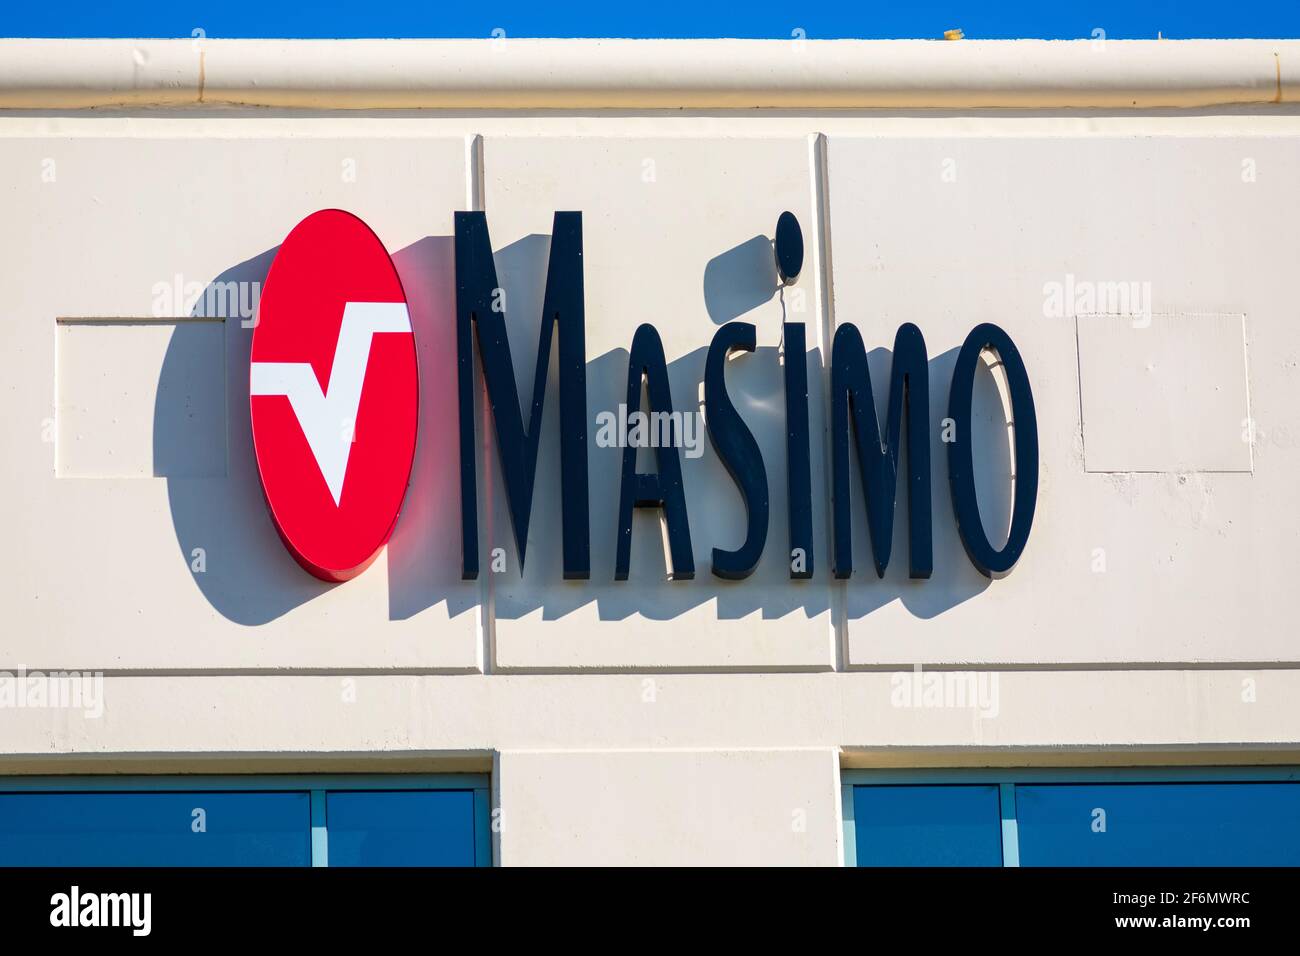 Logo Masimo sur le bâtiment du siège social. Masimo est un fabricant américain de technologies de surveillance non invasive des patients - Irvine, Californie, Etats-Unis Banque D'Images